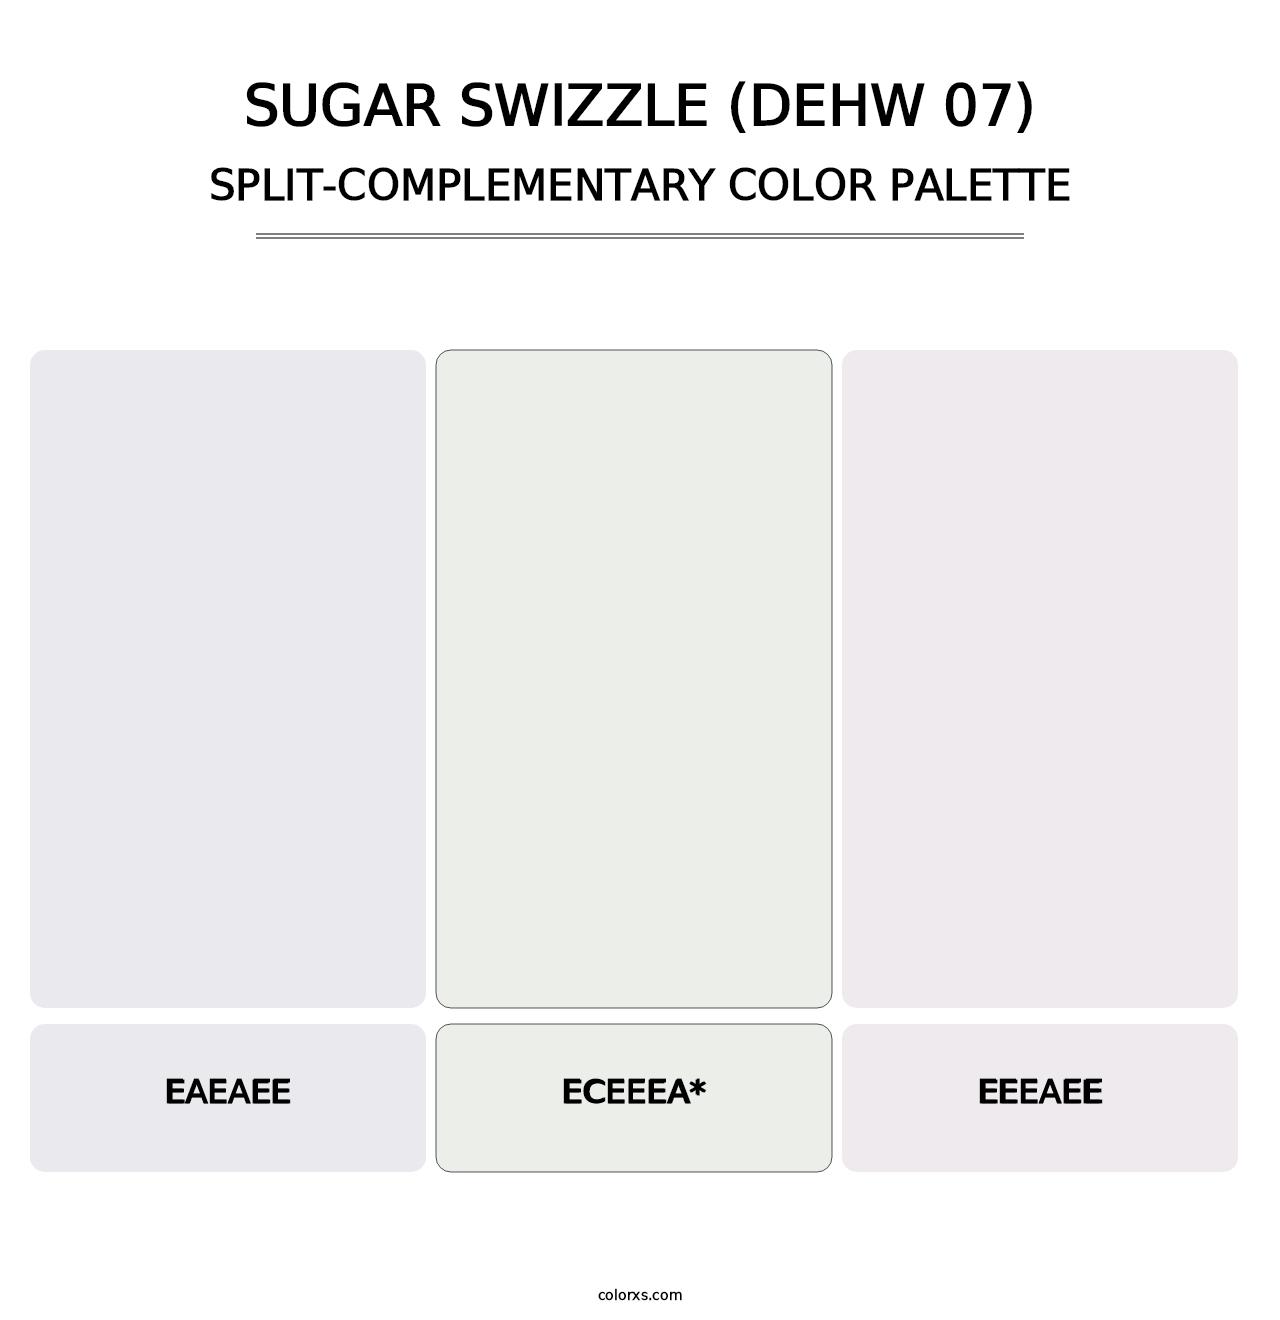 Sugar Swizzle (DEHW 07) - Split-Complementary Color Palette